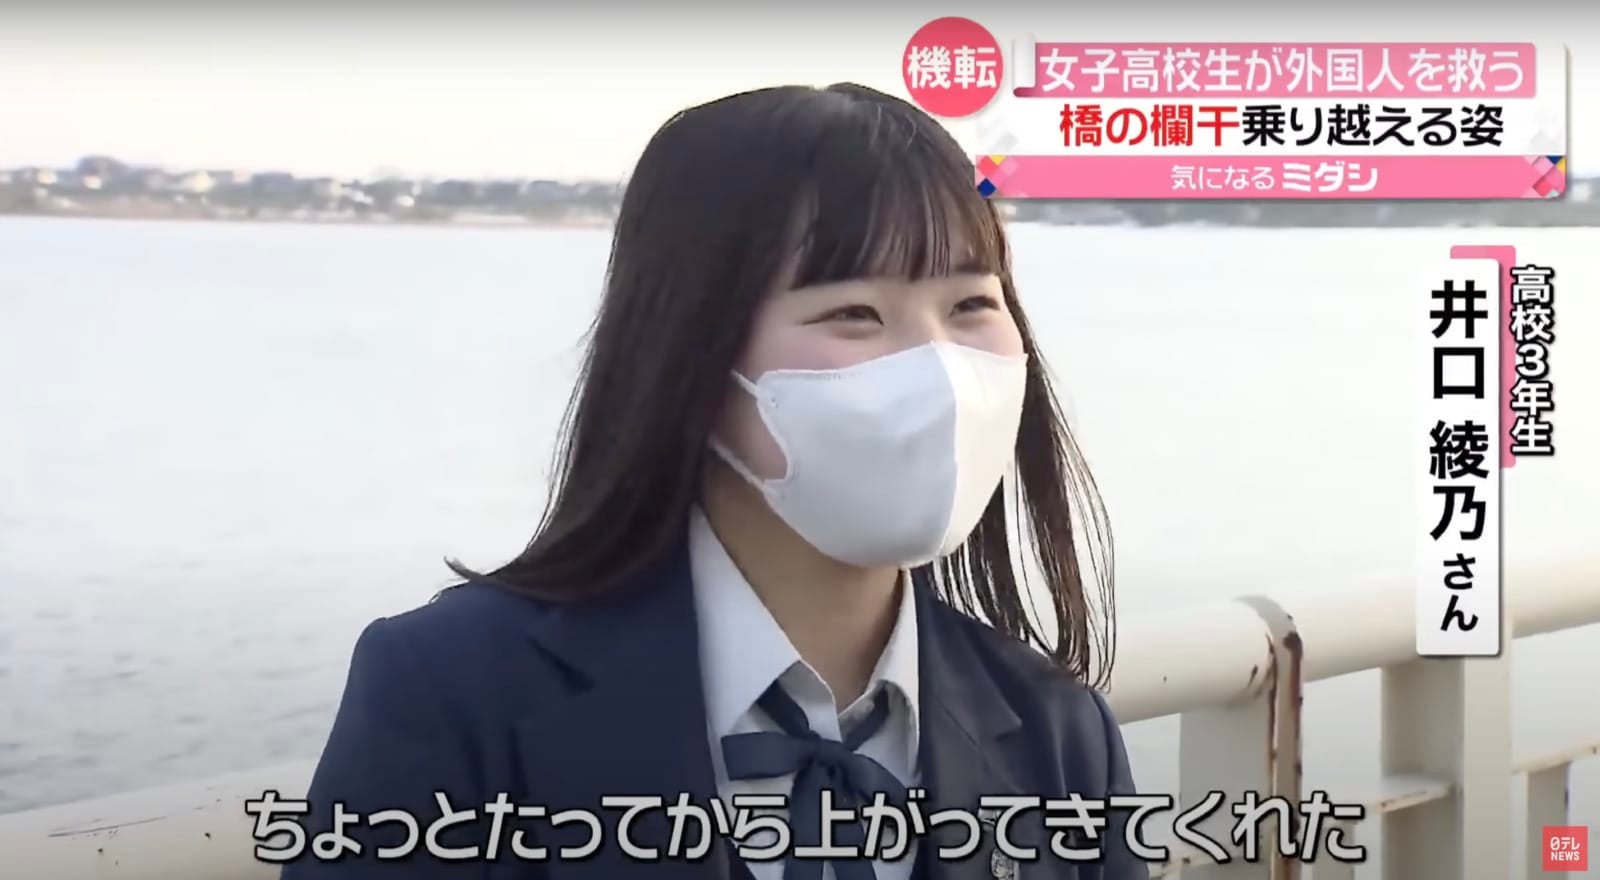 นักเรียนญี่ปุ่นใช้ google translate ช่วยคนกระโดดสะพานฆ่าตัวตาย